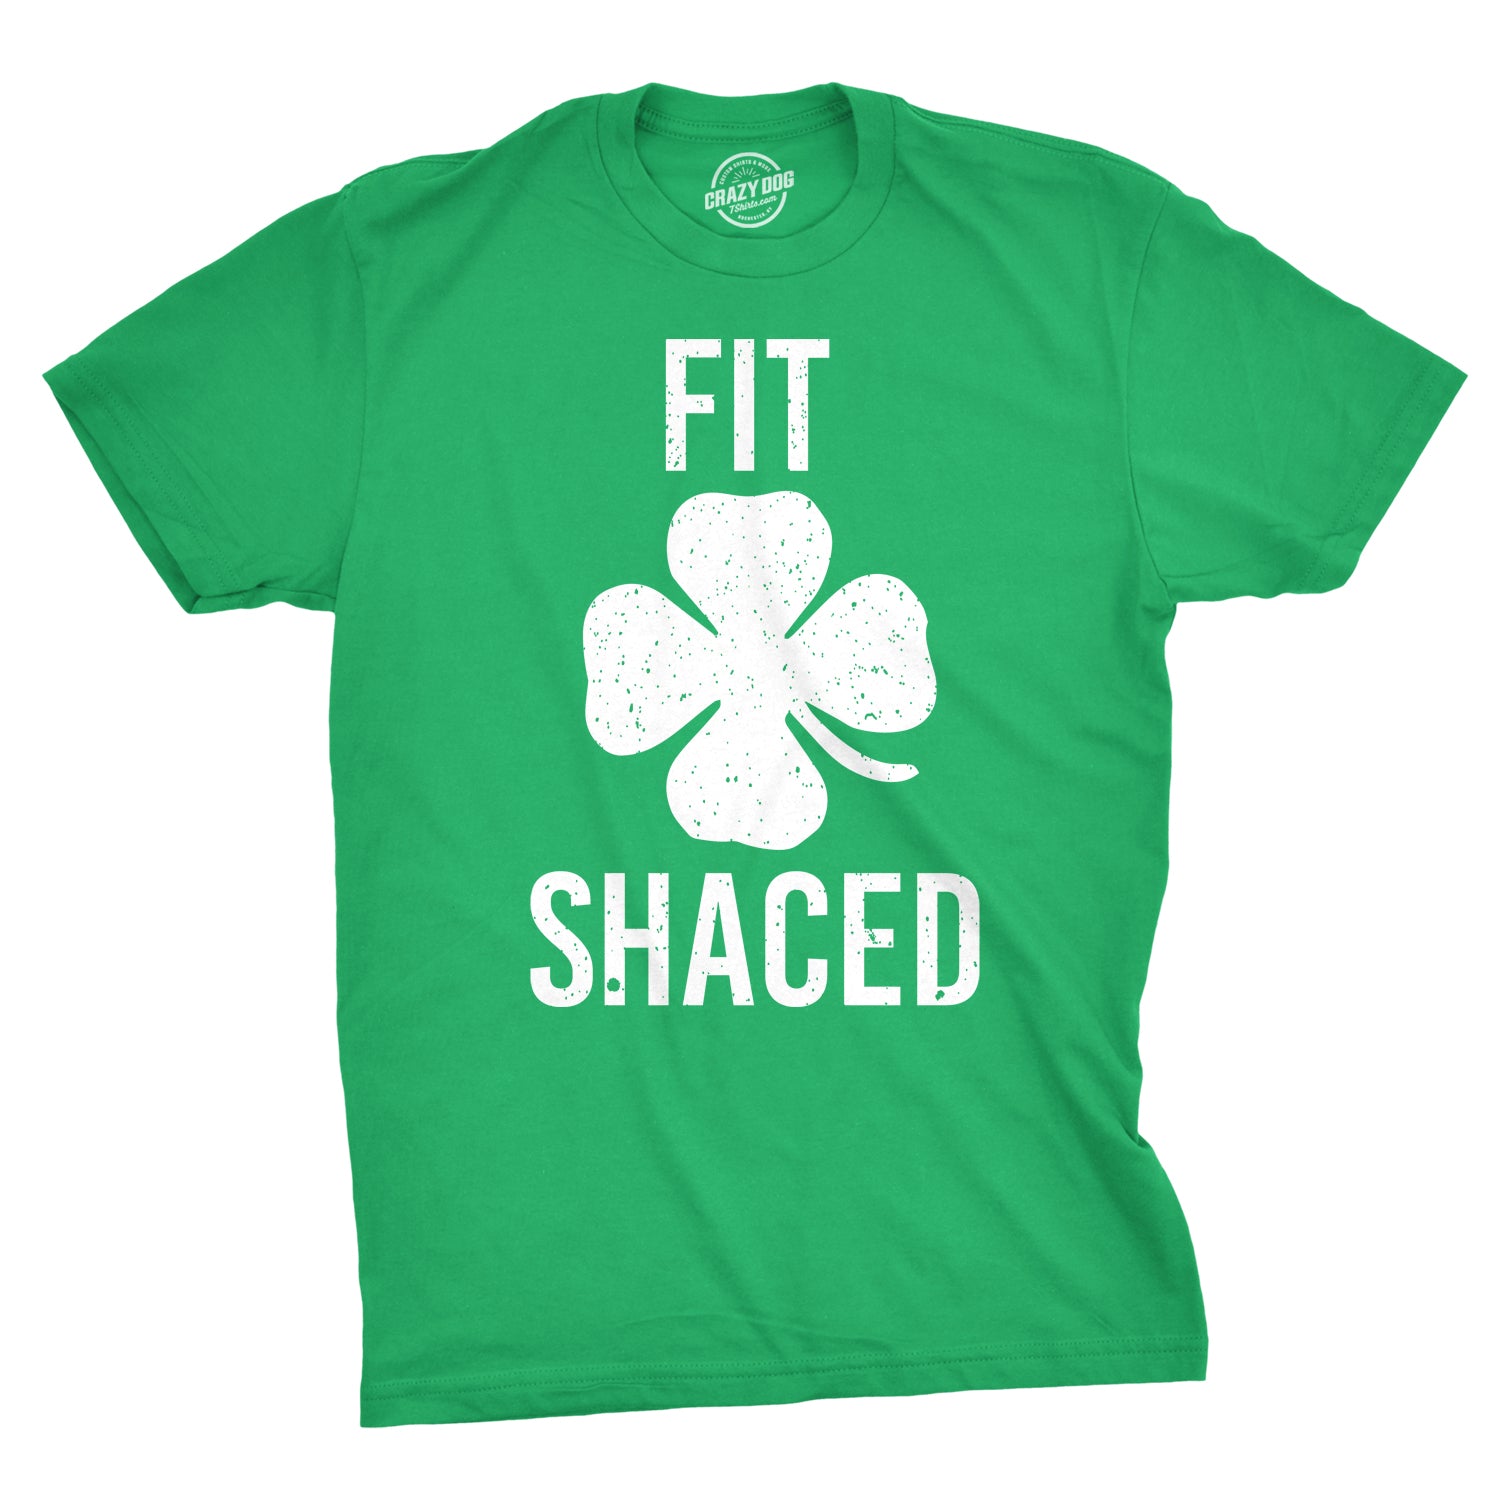 Irish Yoga Happy St. Patricks Day Irish Funny Drinking Beer Shirt